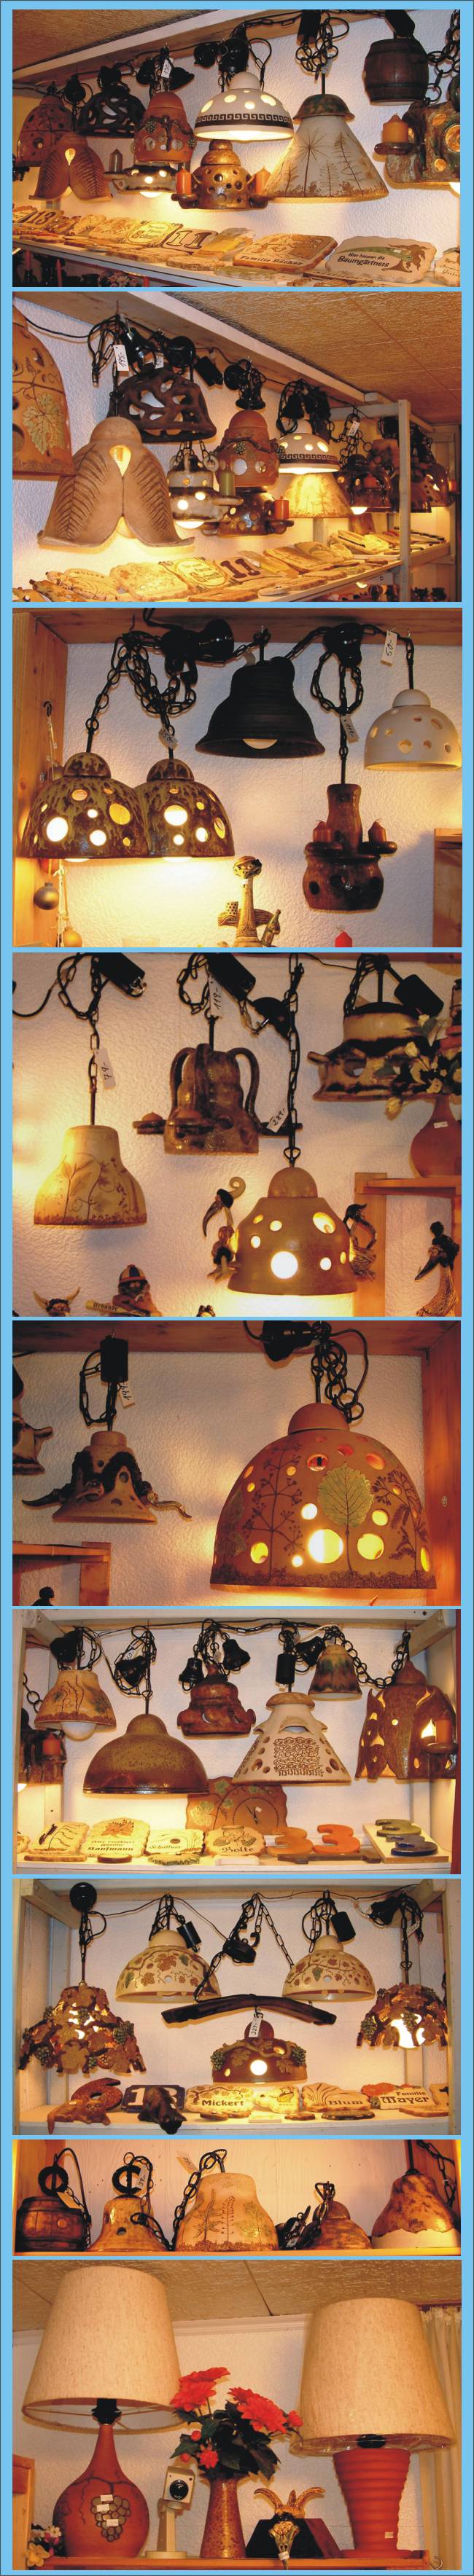 Keramiklampen, Keramikleuchten, Lampen aus Ton, Lampen aus Keramik, Tonlampen, Tonleuchten, Leuchten aus Ton